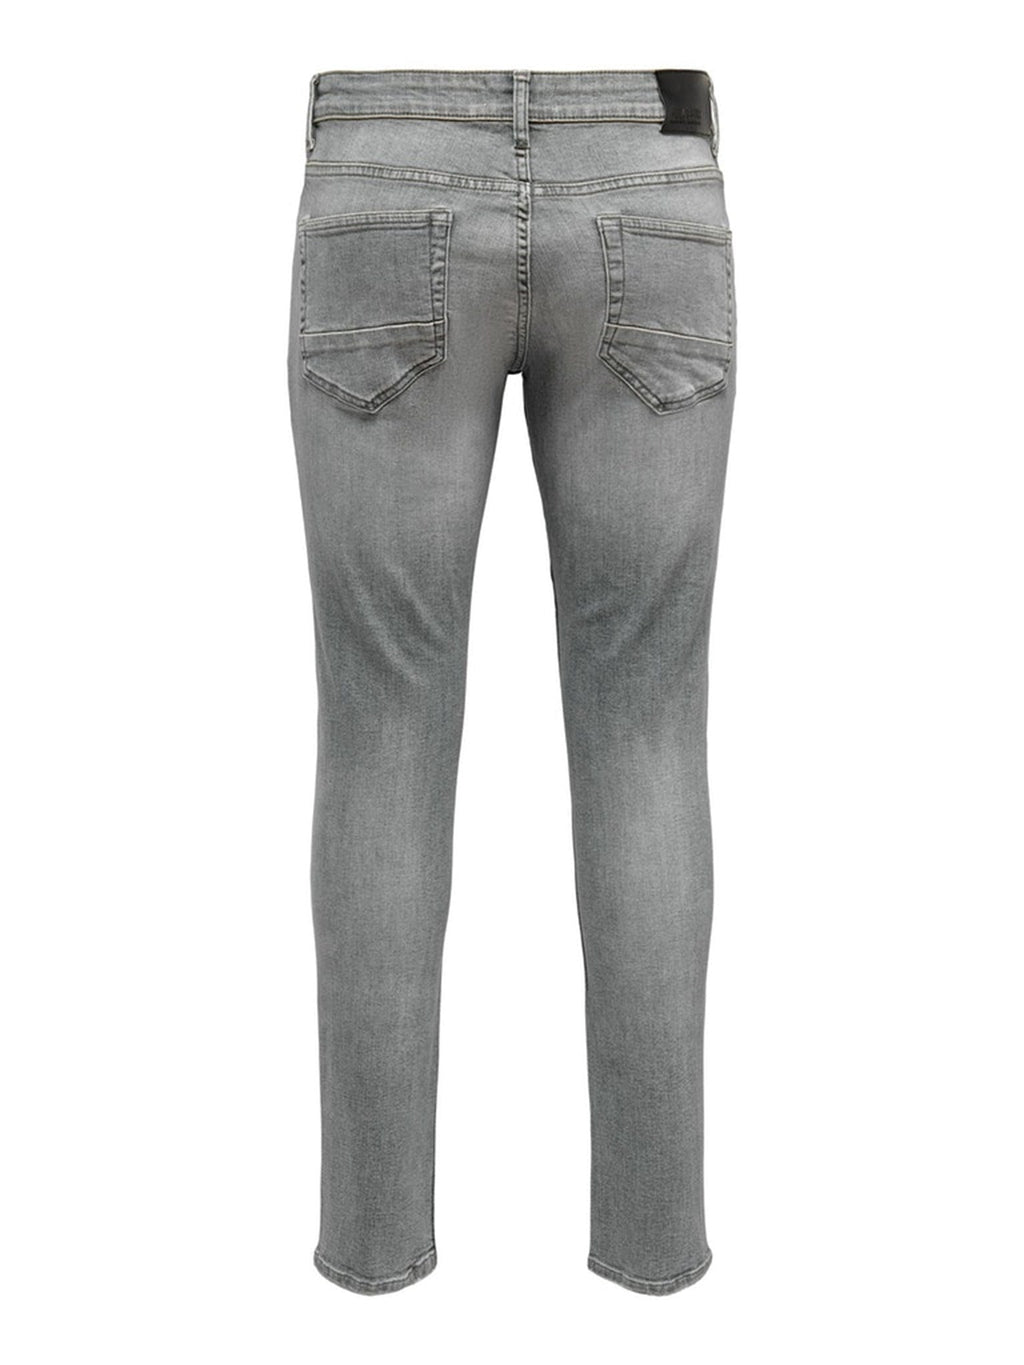 Jeans grises delgados - gris